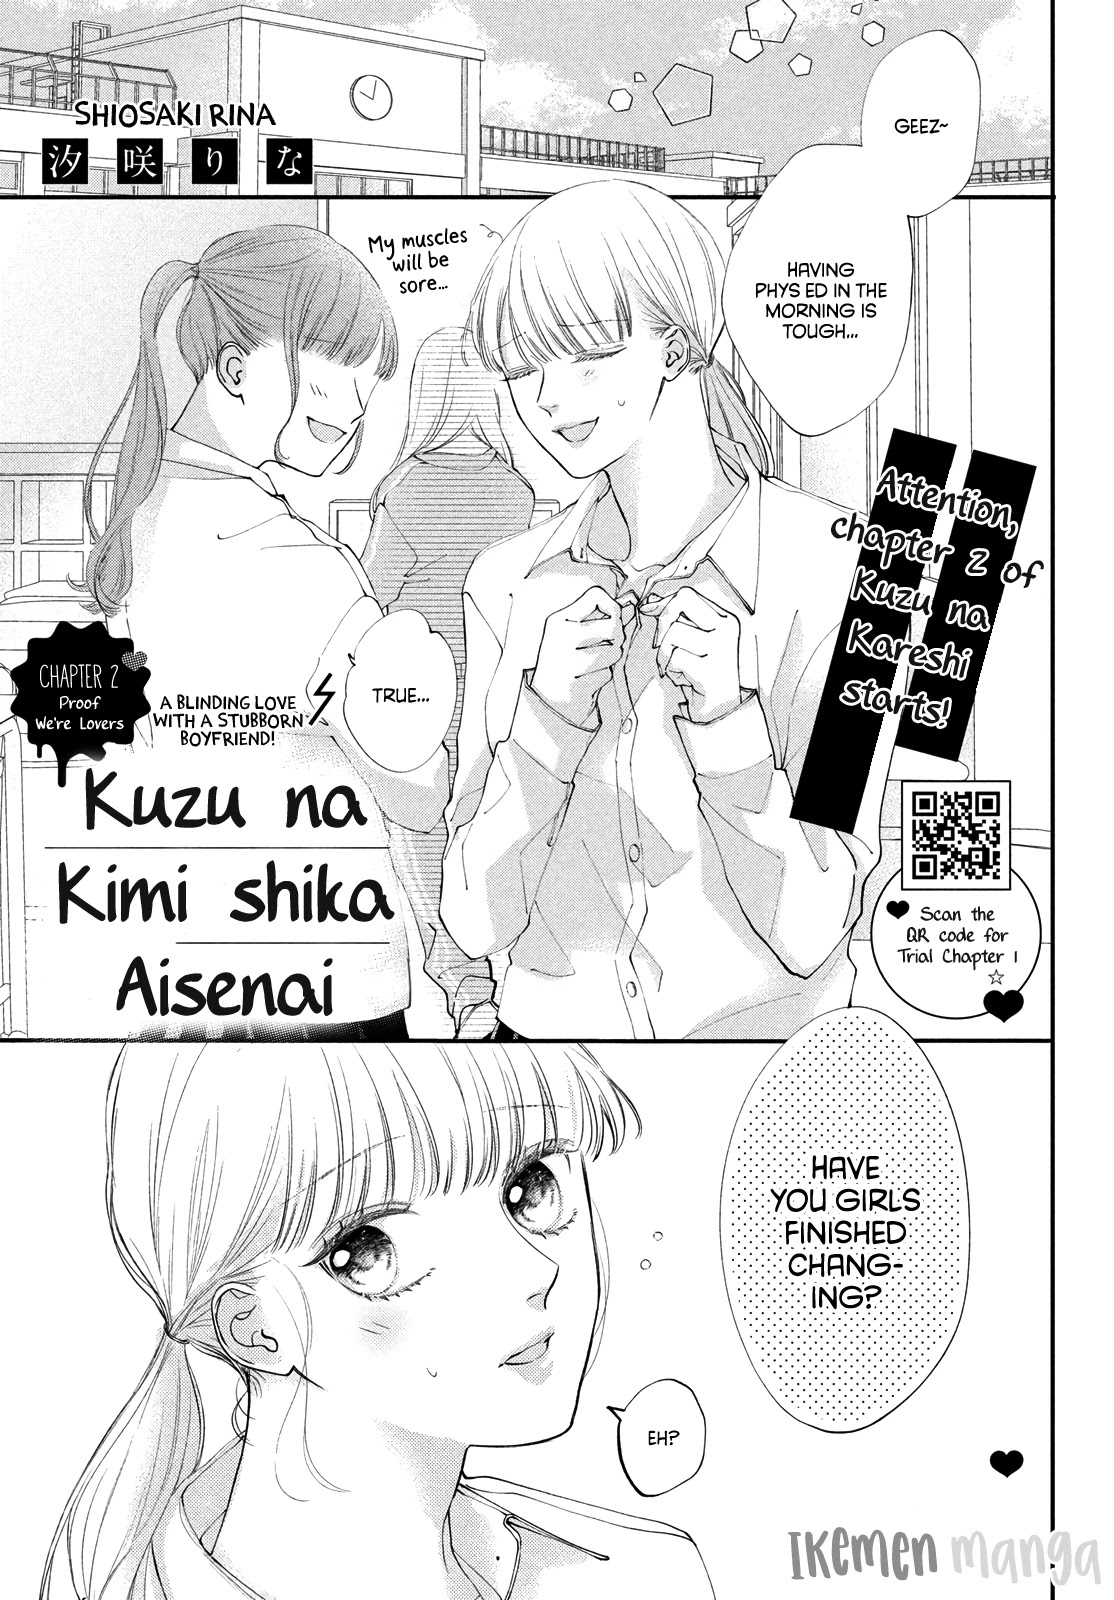 Kuzuna Kimi Shika Aisenai - Page 1